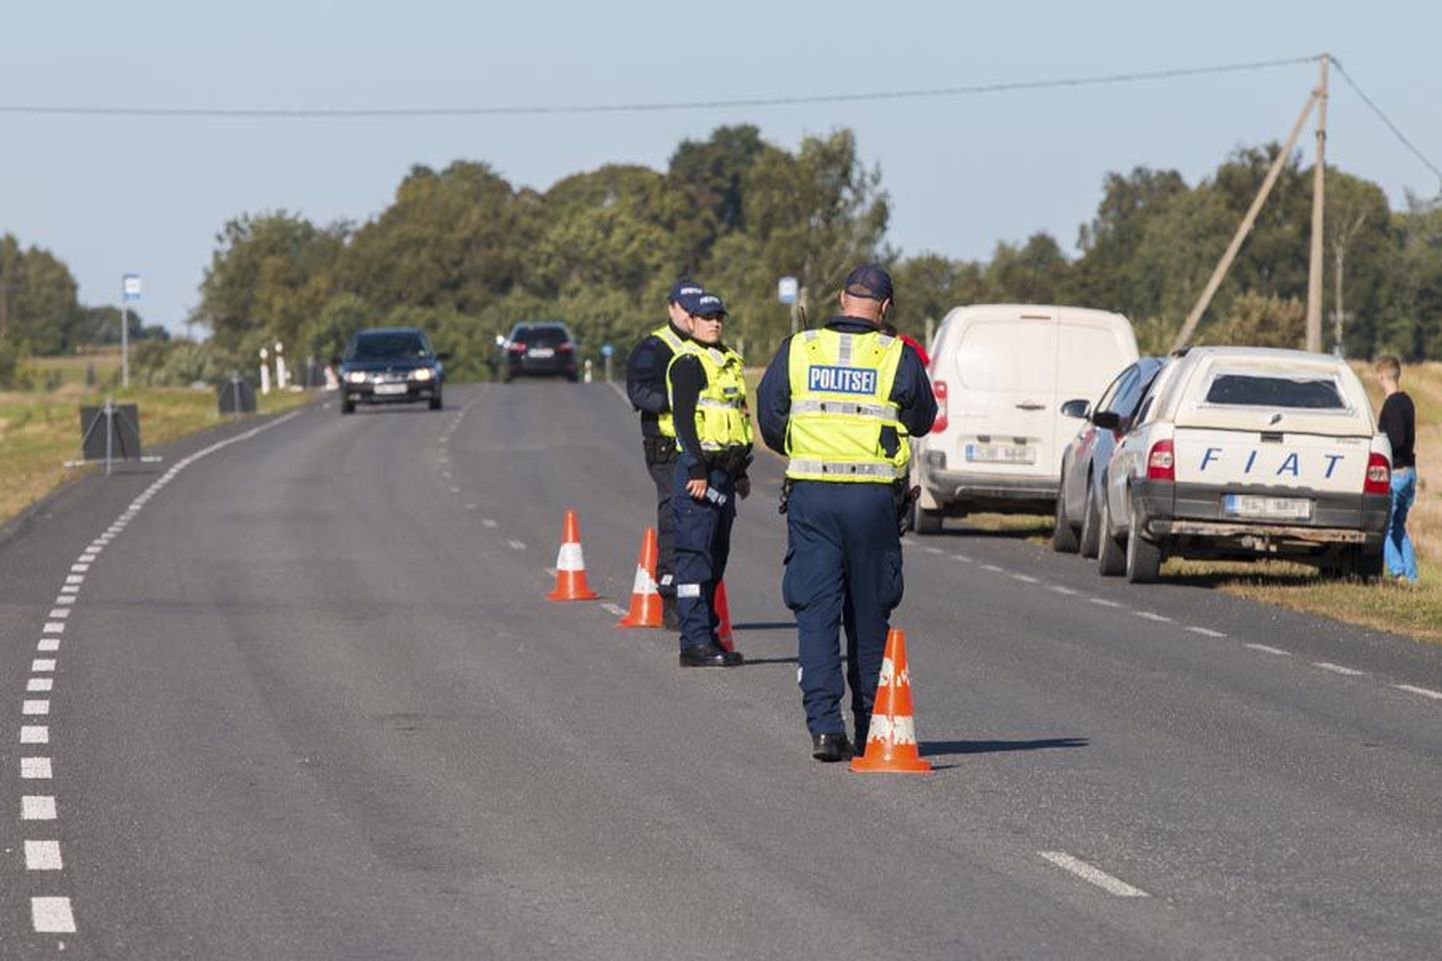 FOTO: Pühapäeva ennelõunal panid politseinikud Vastemõisa lähedal tee äärde seisma kolm autot, mille juhtidel tuvastati joove.